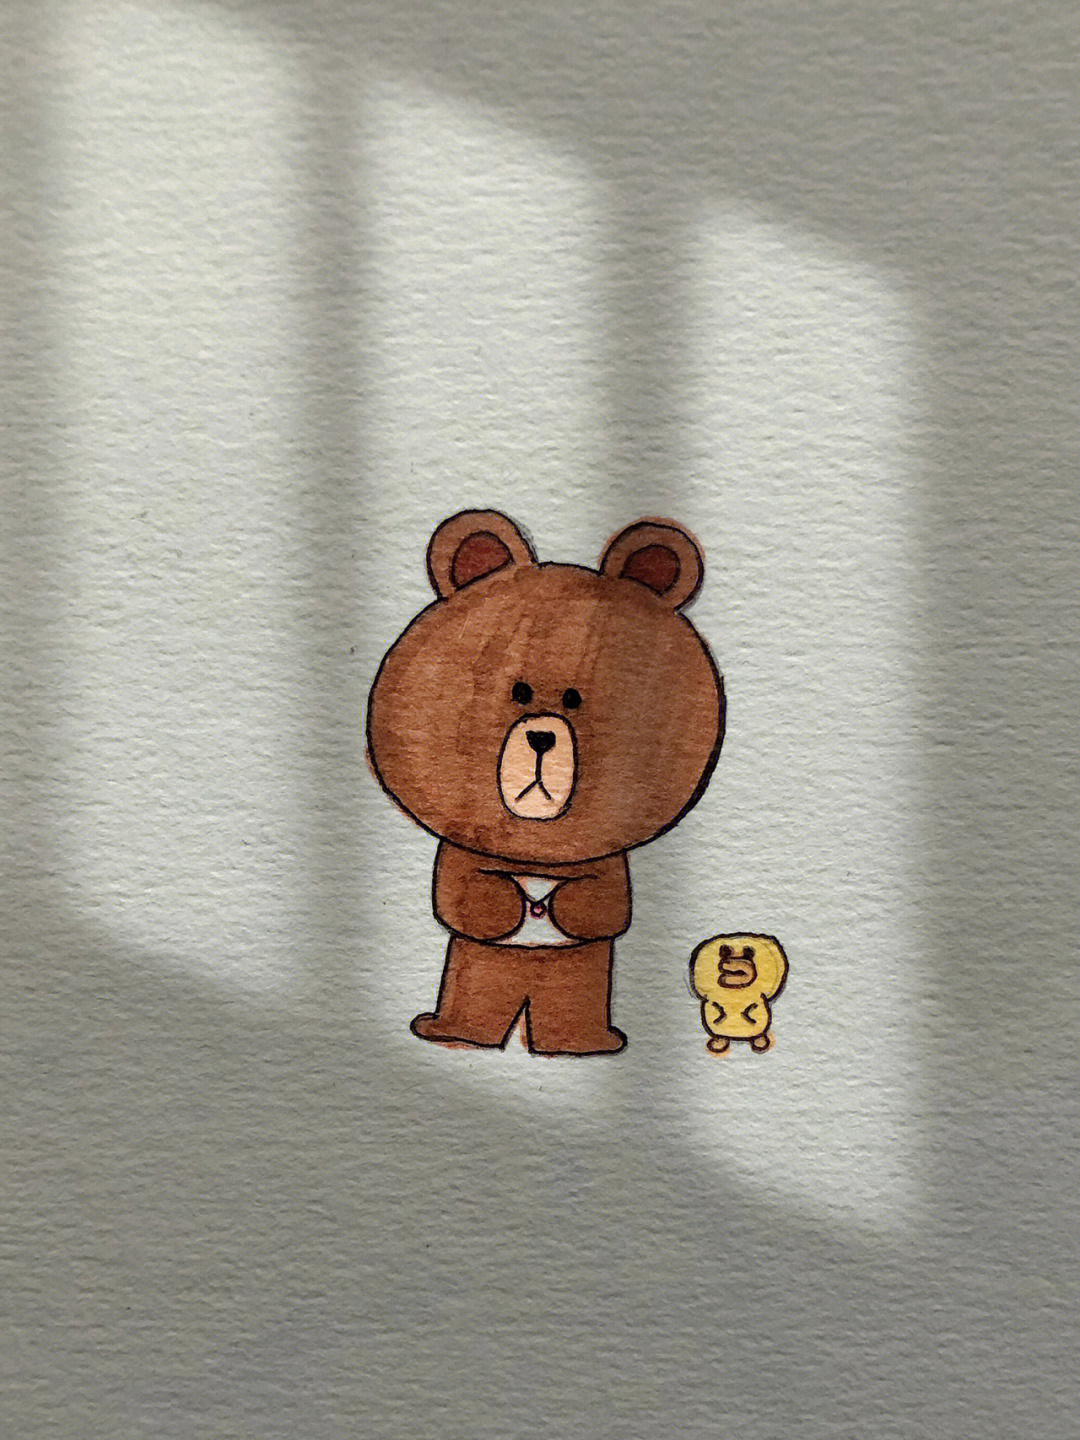 简笔画布朗熊